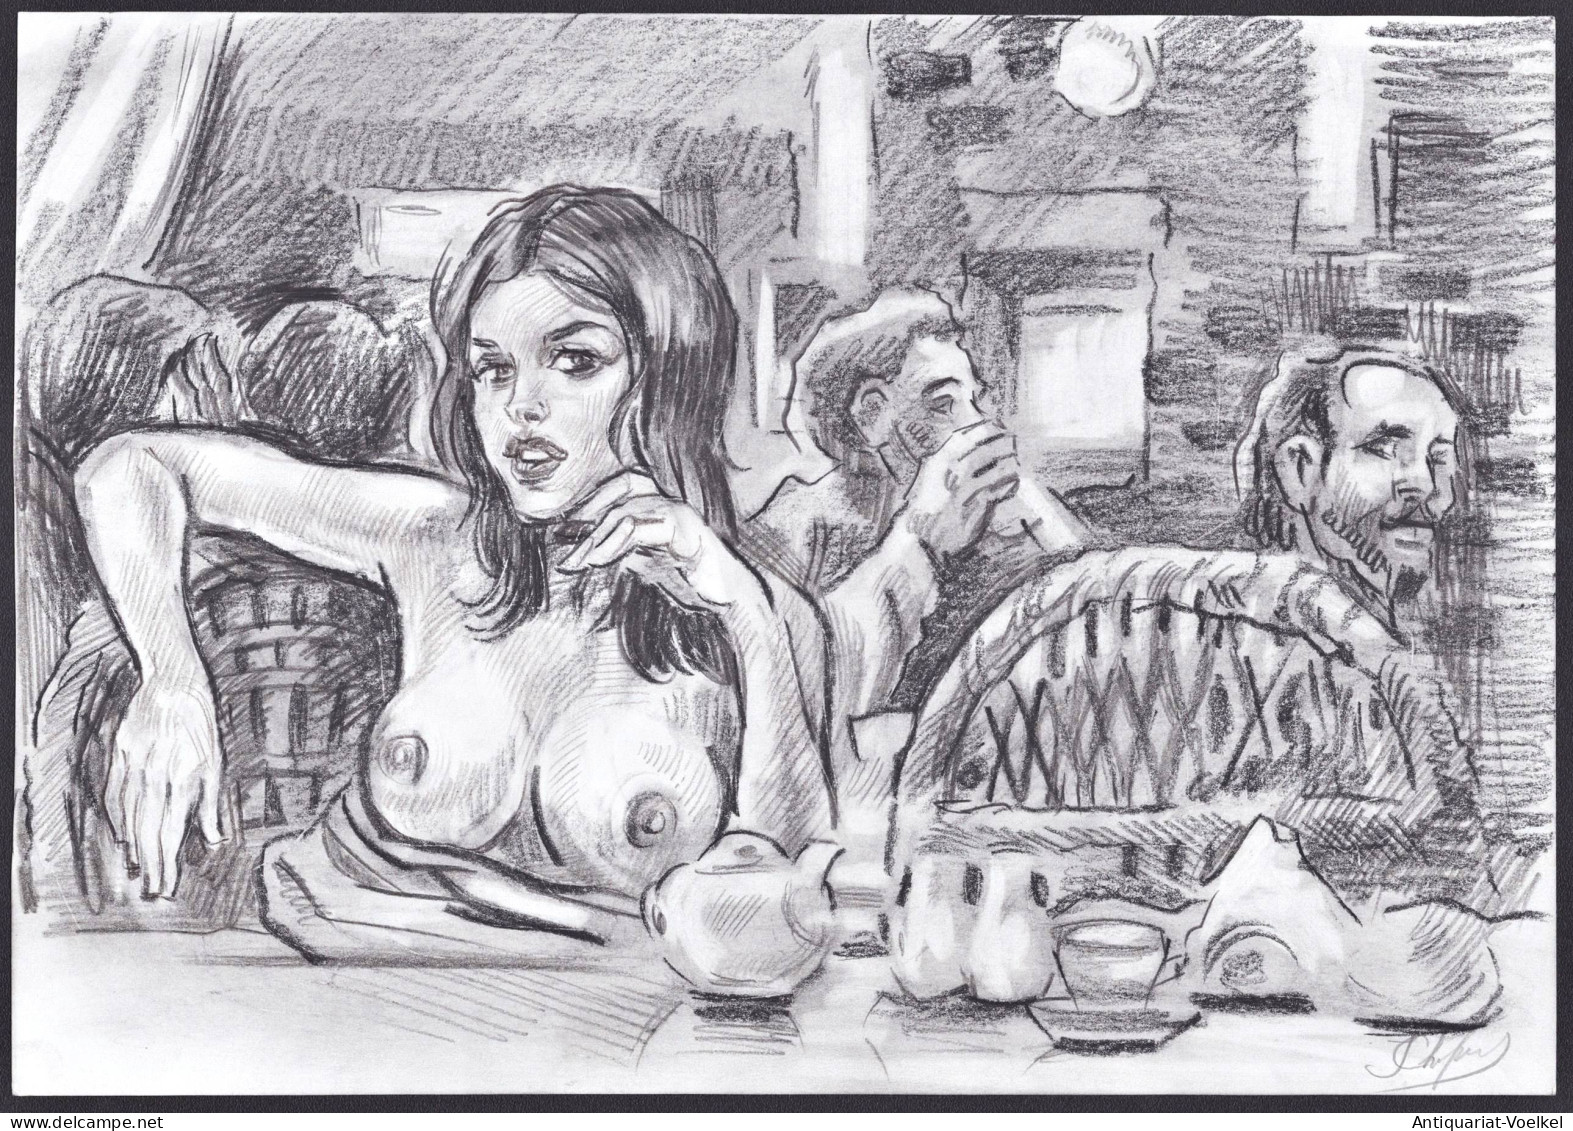 (Woman In A Bar / Frau Im Restaurant) - Akt / Aktzeichnung / Frau / Woman / Femme / Nude / Dessin - Stampe & Incisioni